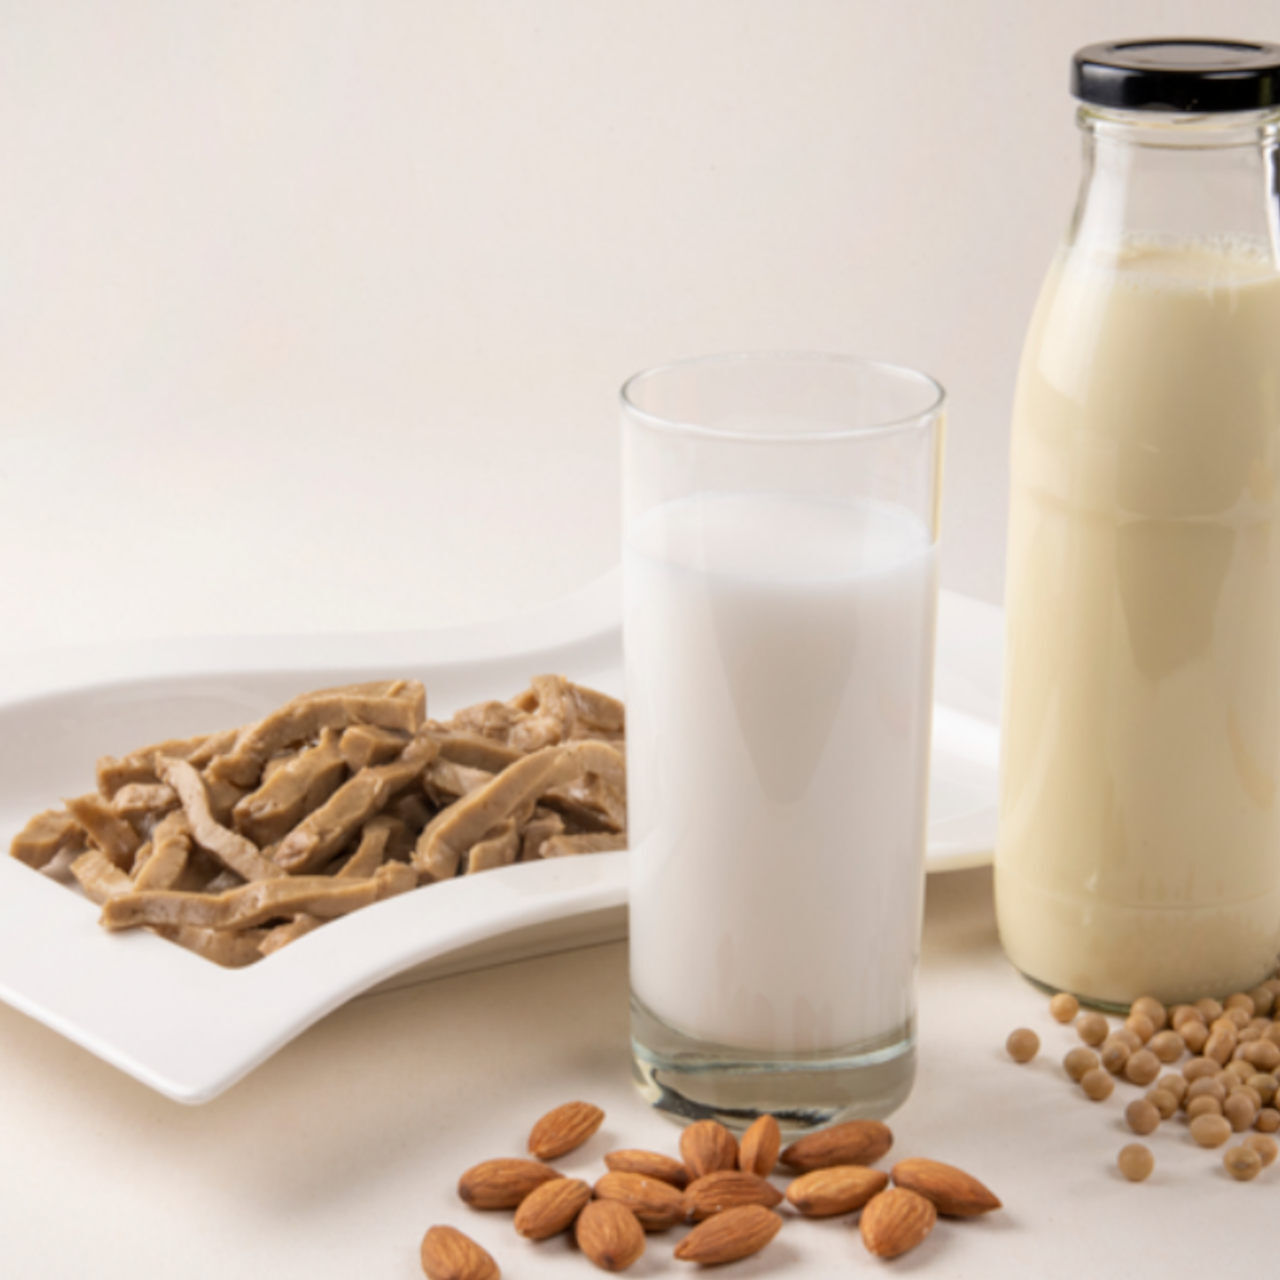 Sữa: sản phẩm thay thế từ thực vật đang được điều tra ở Thụy Sĩ